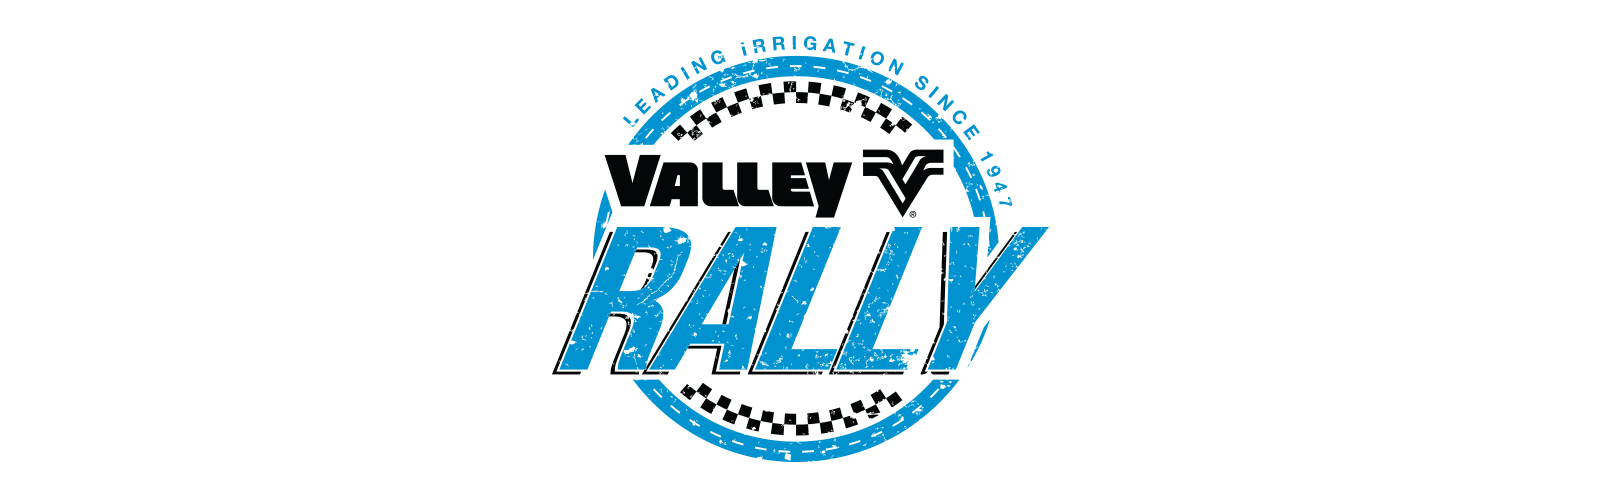 valley-rally-logo